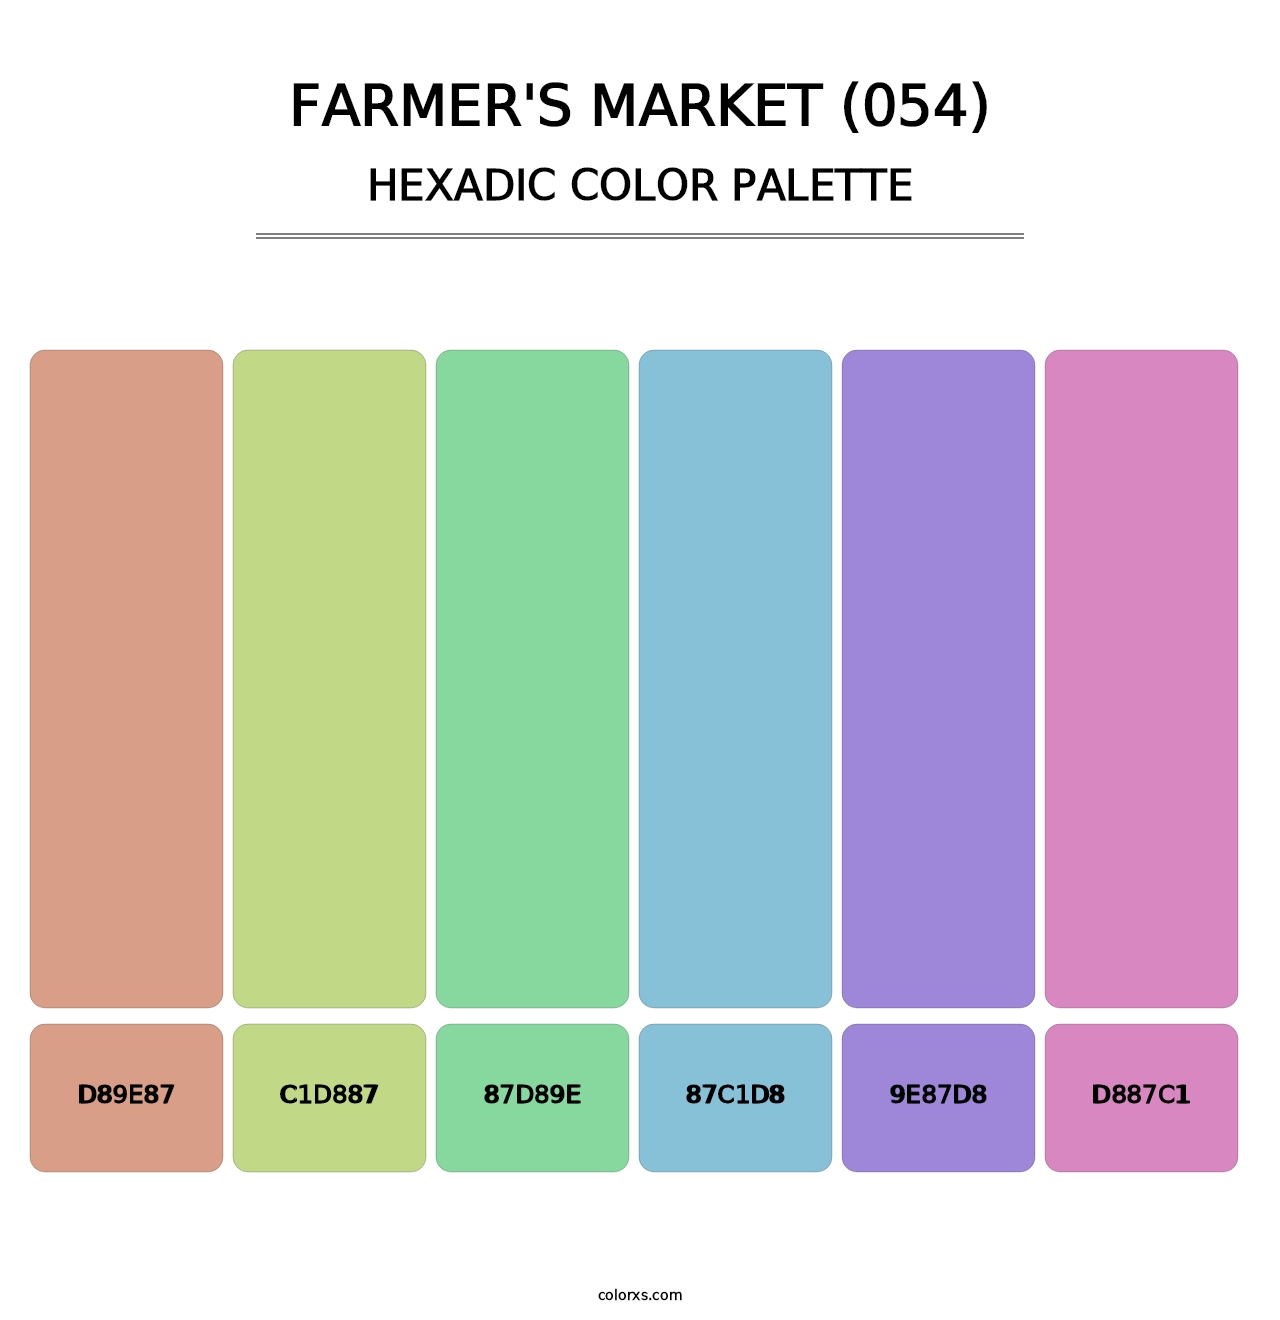 Farmer's Market (054) - Hexadic Color Palette